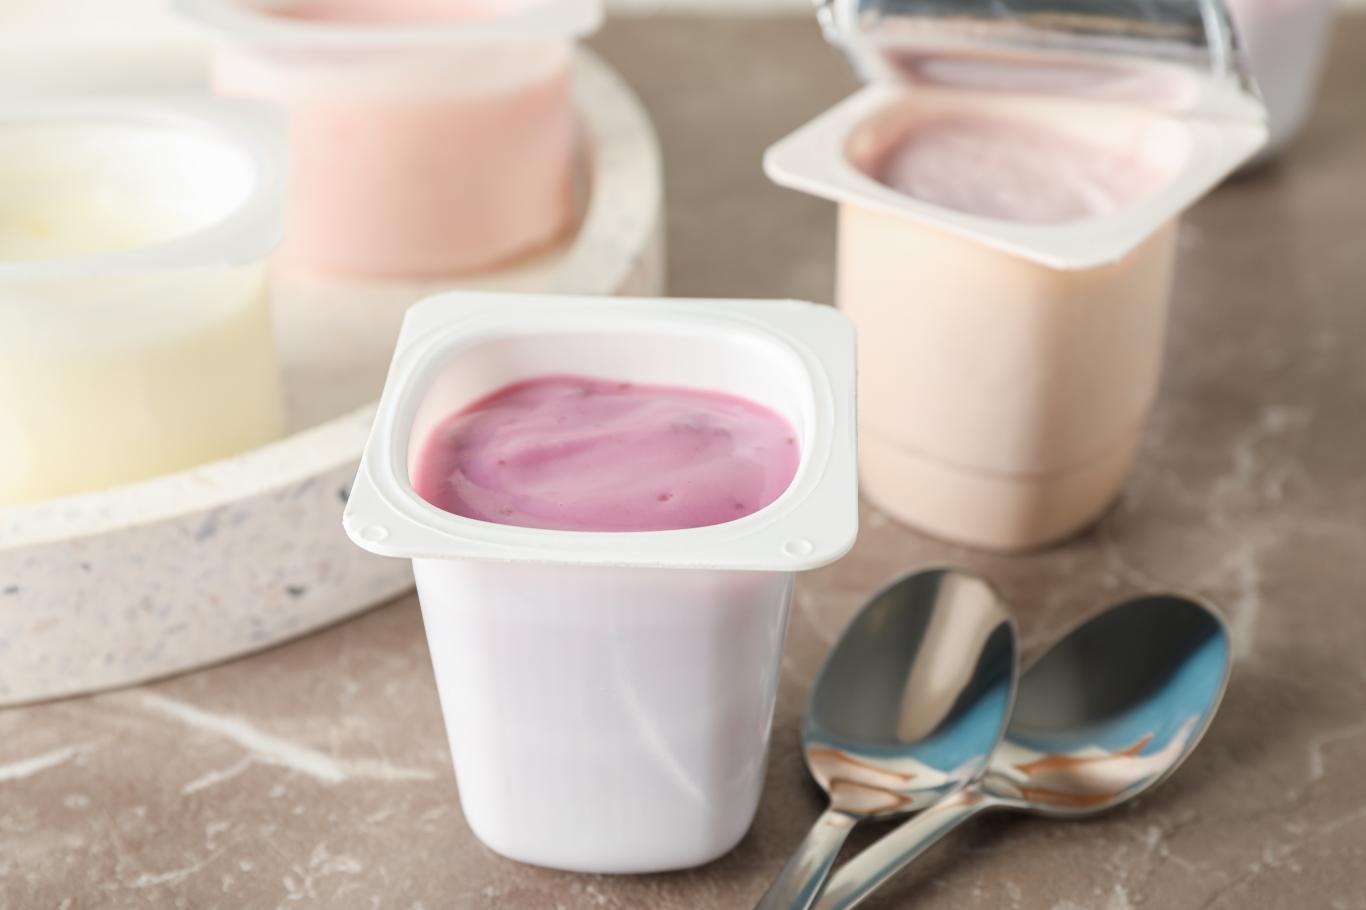 rappel produit : ces yaourts aux fruits d’une grande marque présentent un problème